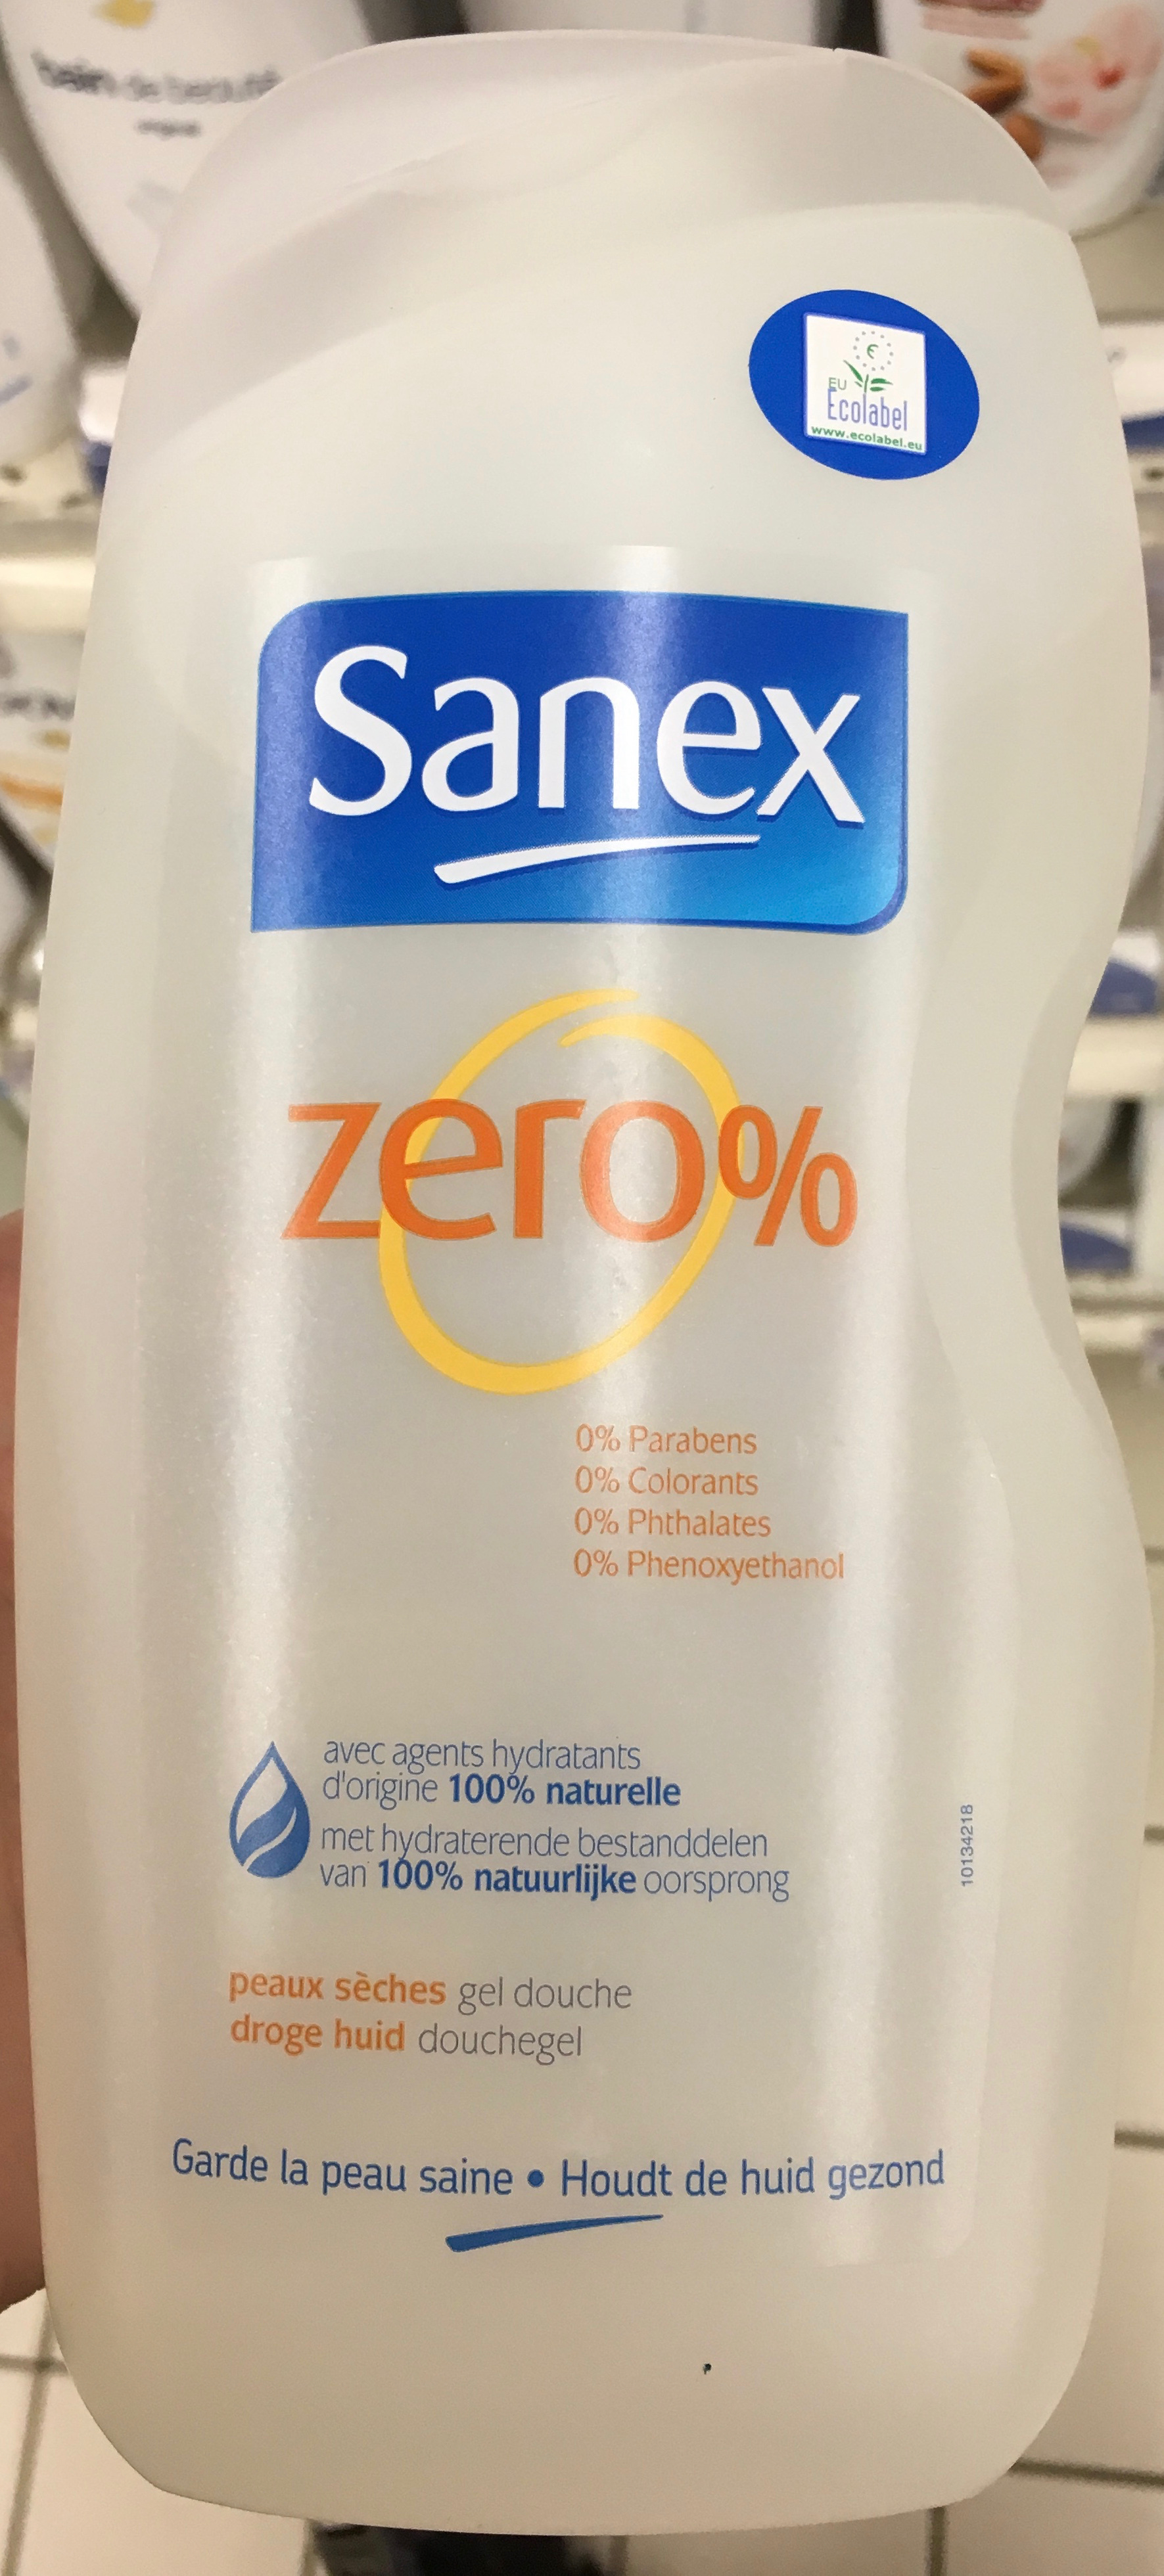 Zero % Gel douche peaux sèches - Produit - fr